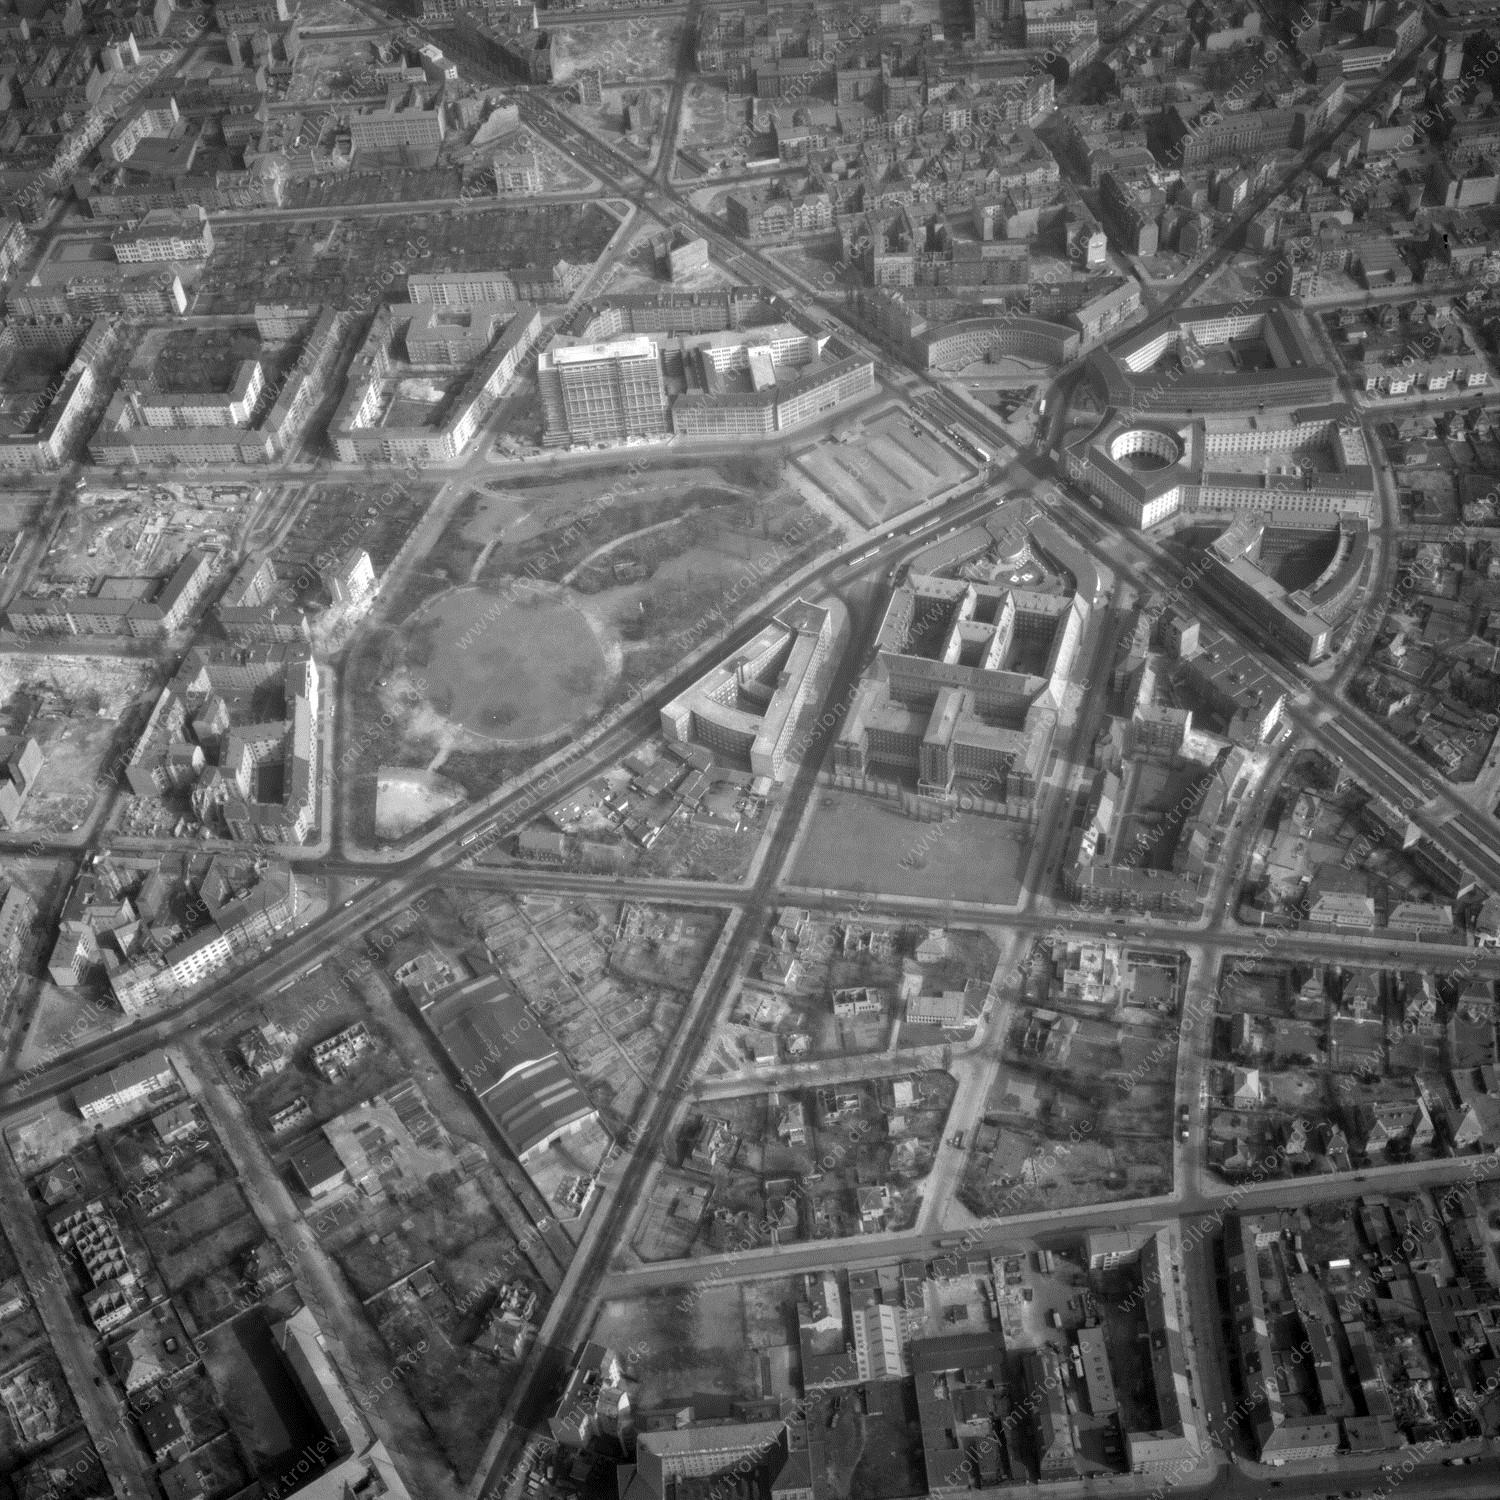 Alte Fotos und Luftbilder von Berlin - Luftbildaufnahme Nr. 07 - Historische Luftaufnahmen von West-Berlin aus dem Jahr 1954 - Flugstrecke Charlie